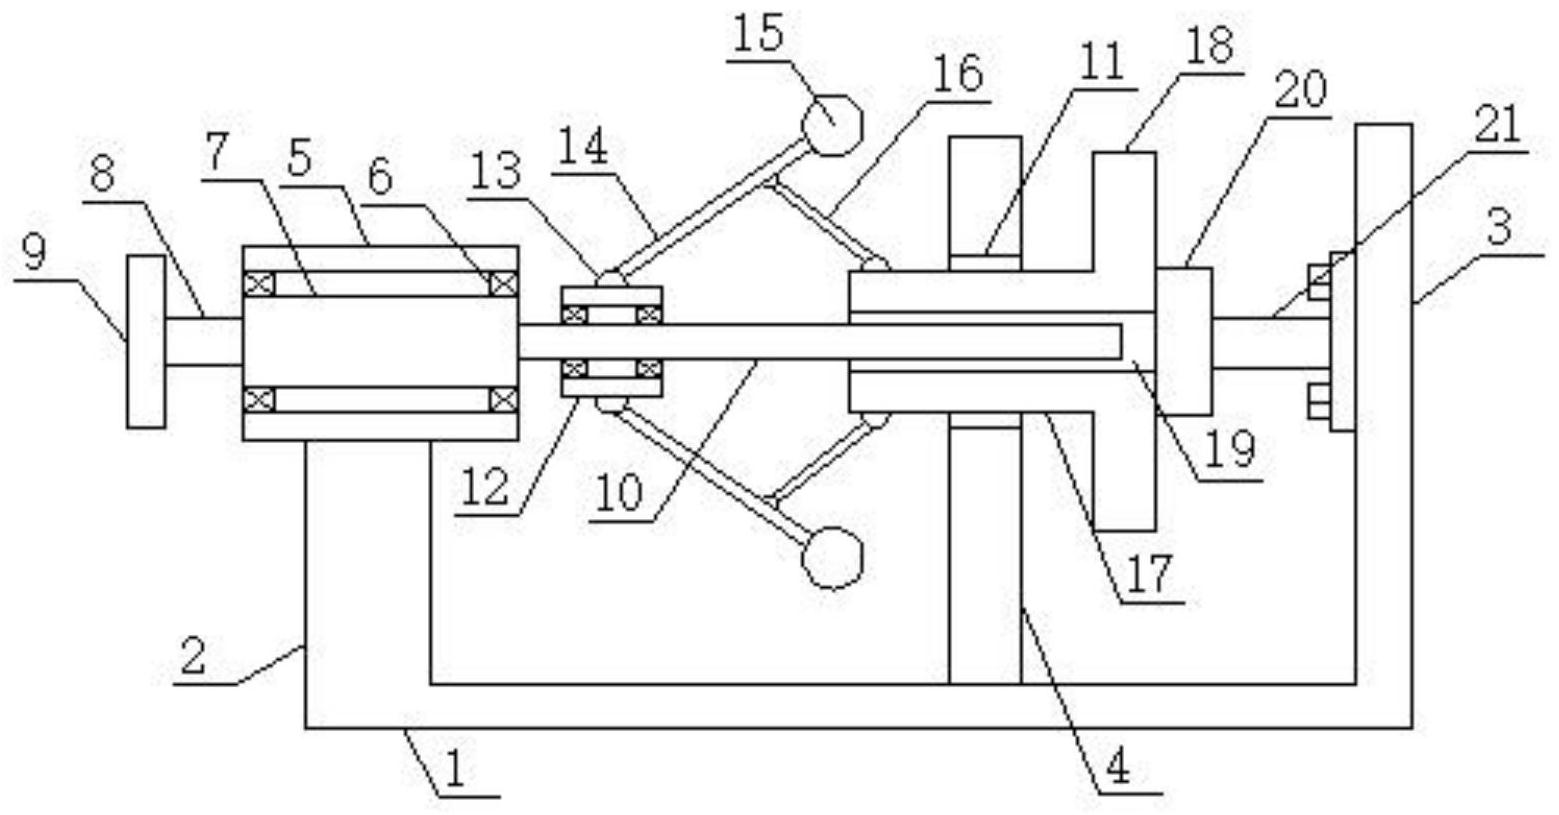 一种旋转部件用降速装置专利图